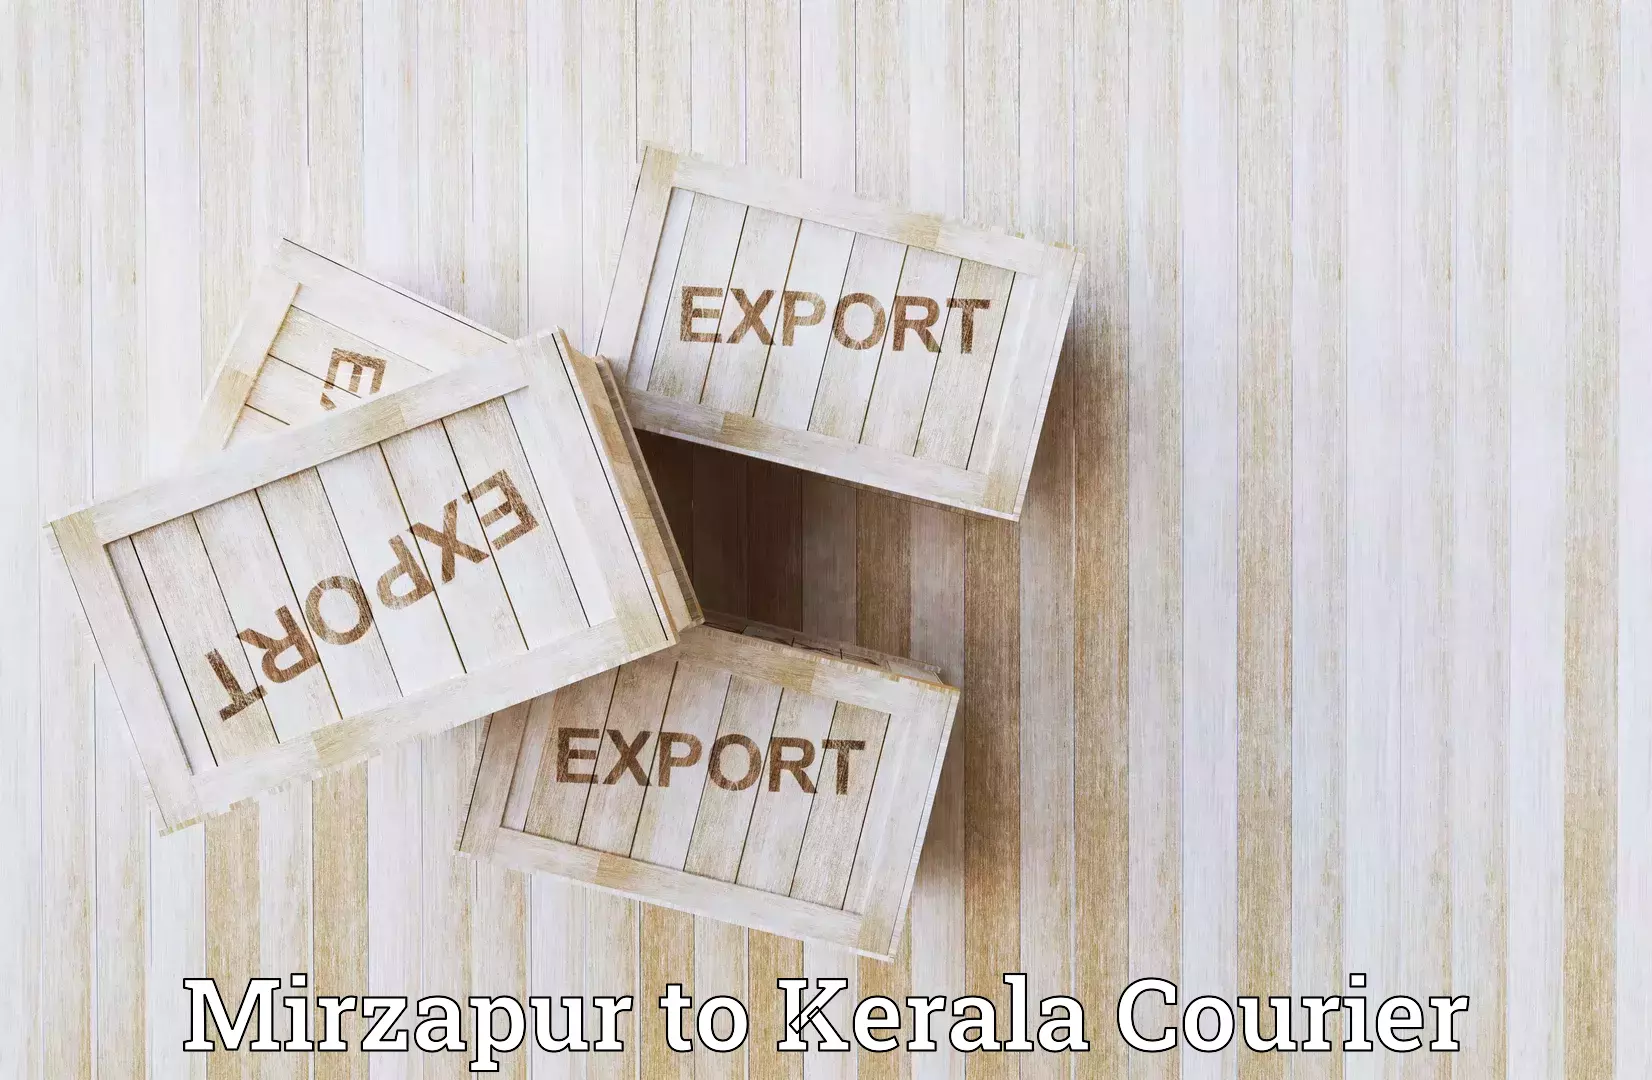 Efficient parcel service Mirzapur to Punalur